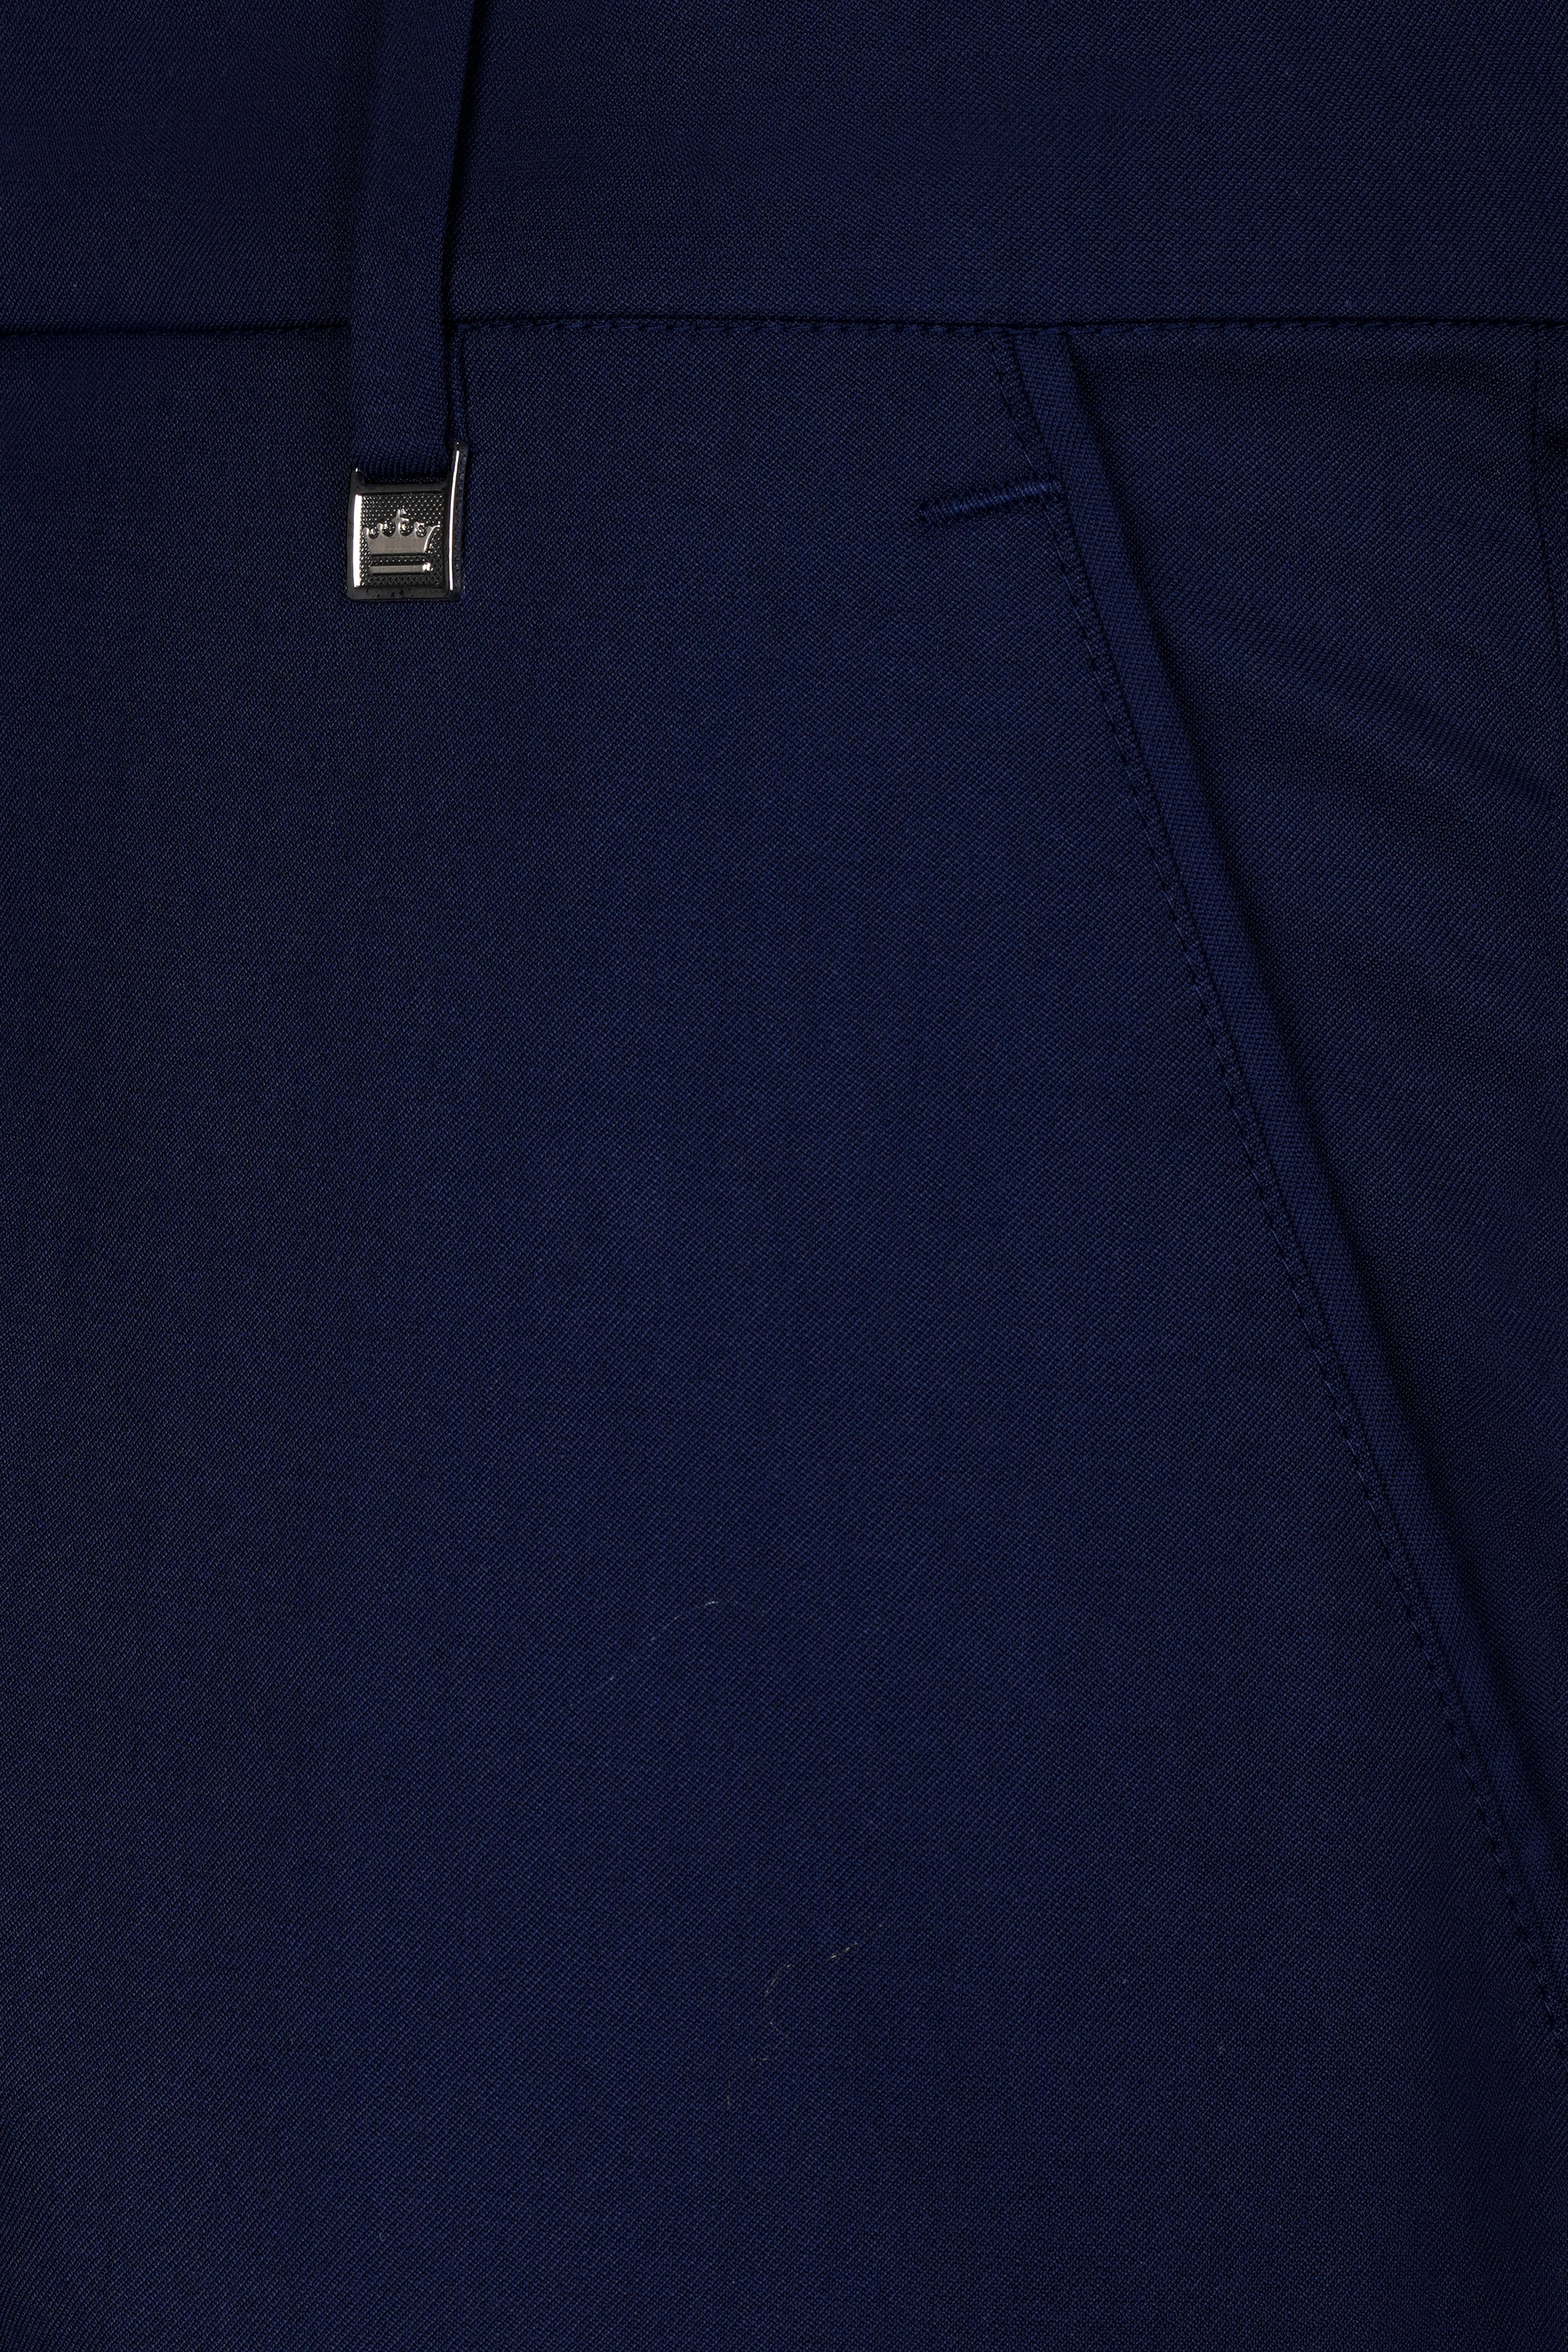 Cinder Blue Wool Rich Pant T3077-28, T3077-30, T3077-32, T3077-34, T3077-36, T3077-38, T3077-40, T3077-42, T3077-44